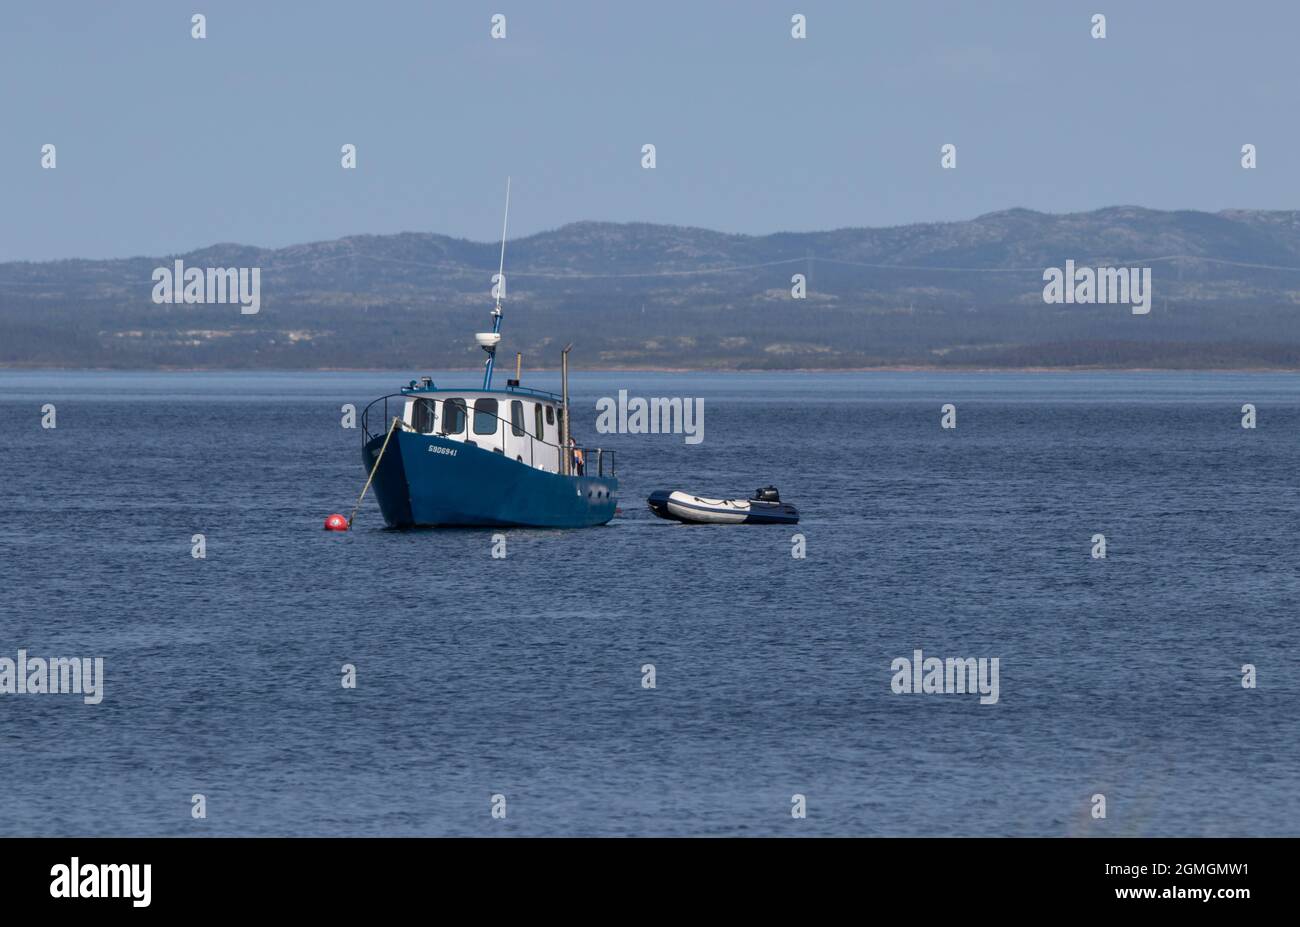 bateau de pèche fleuve St-Laurent, Le Parc National de l'Archipel-de-Mingan Québec Kanada Stockfoto